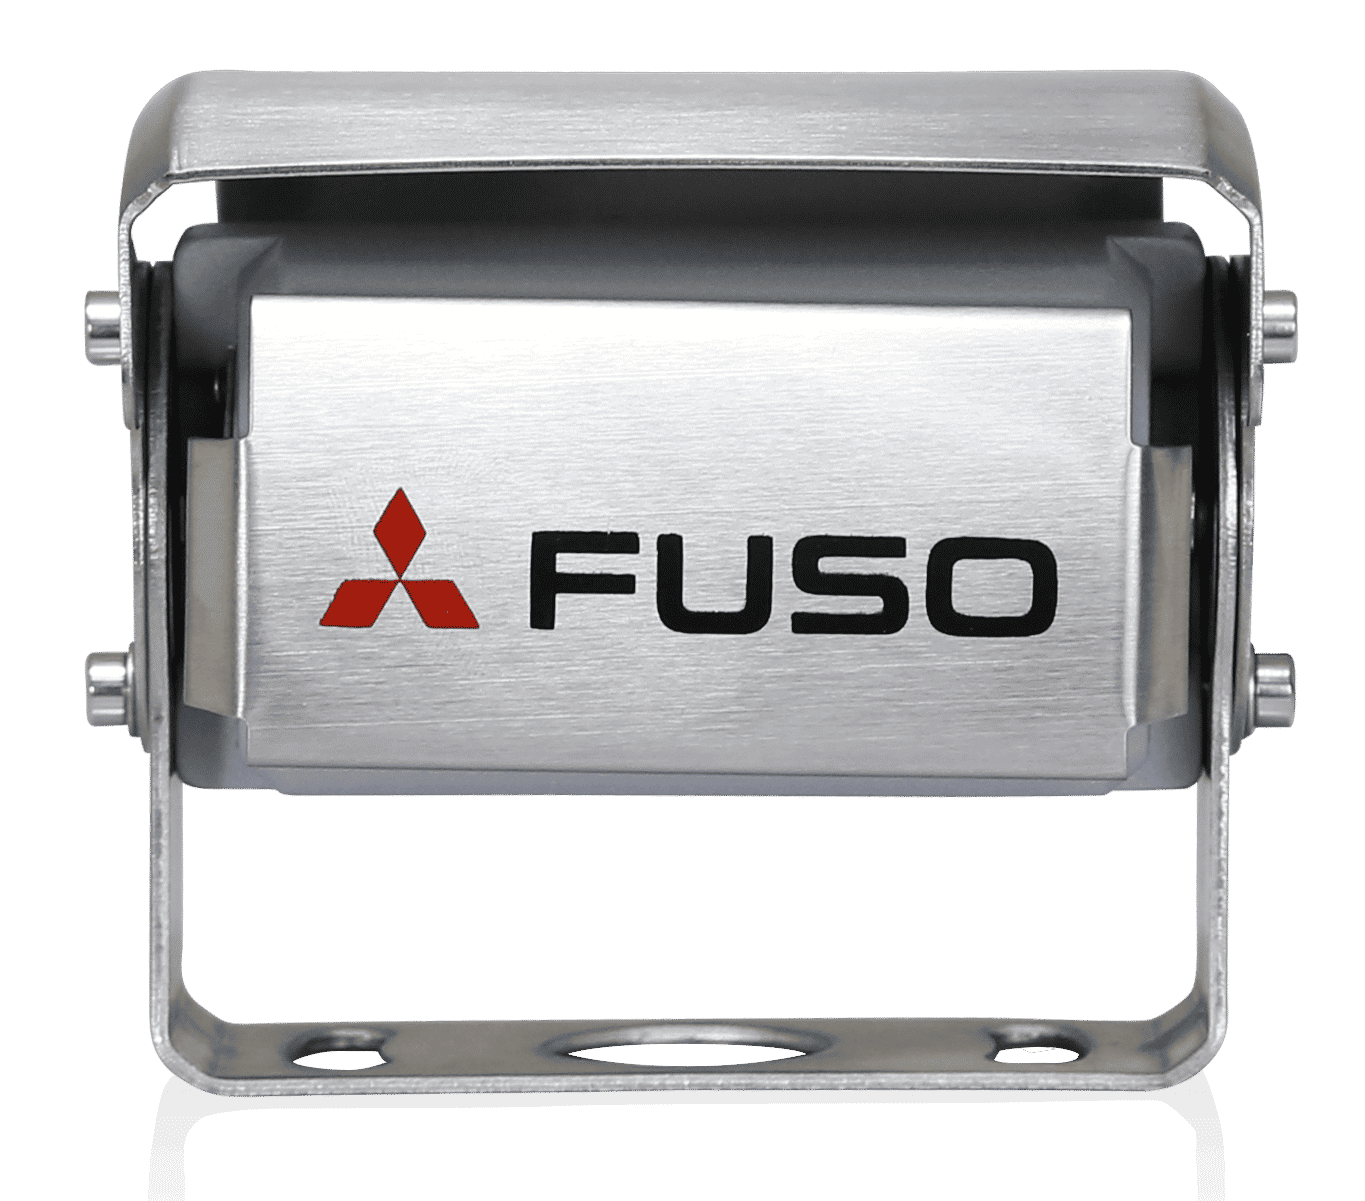 Tehokas FUSO-peruutuskamera parantaa näkyvyyttä ja turvallisuutta. Siinä oleva mikrofoni auttaa huomioimaan ajoneuvon takana olevan alueen paremmin. Näytön väri muuttuu automaattisesti pimeällä selkeyden lisäämiseksi. Järjestelmää voi käyttää 12 ja 24 V:n virralla, ja se täyttää FUSOn korkeat testausvaatimukset. Kamera on vesitiivis IP69K-luokituksen mukaisesti. Näytön tarkkuus on 800 x 480 x 3 (RGB).